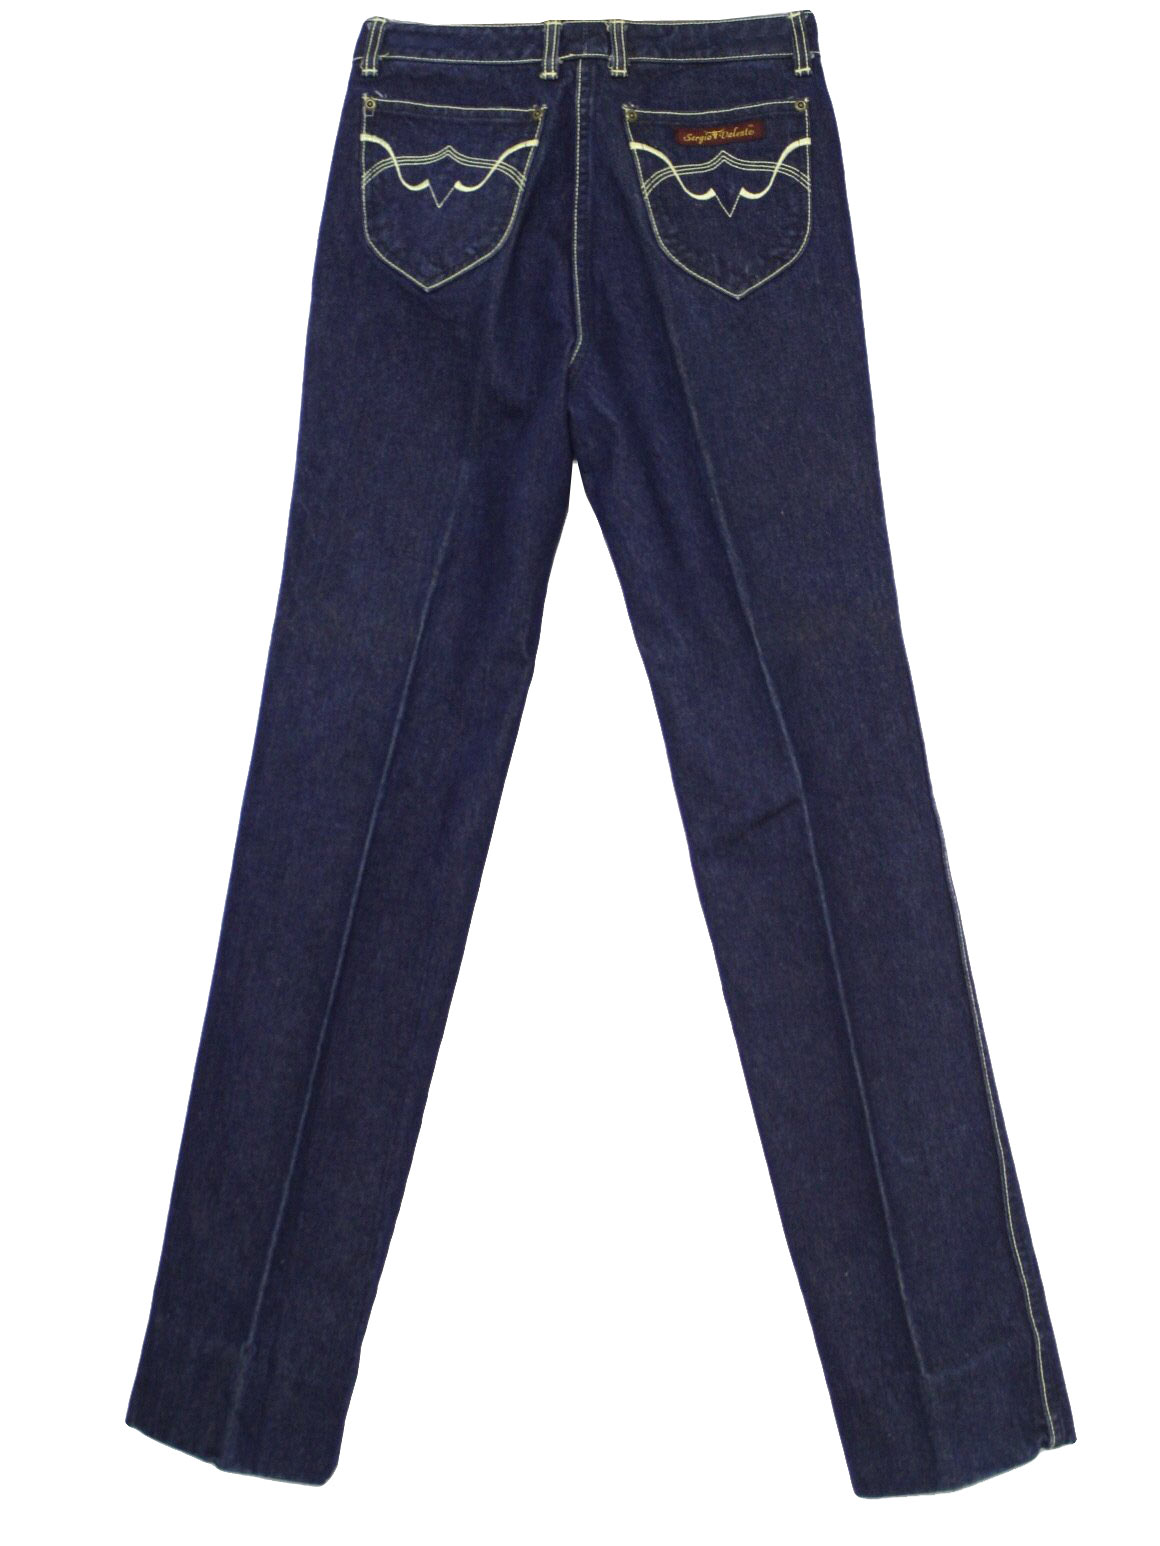 sergio valente jeans for sale